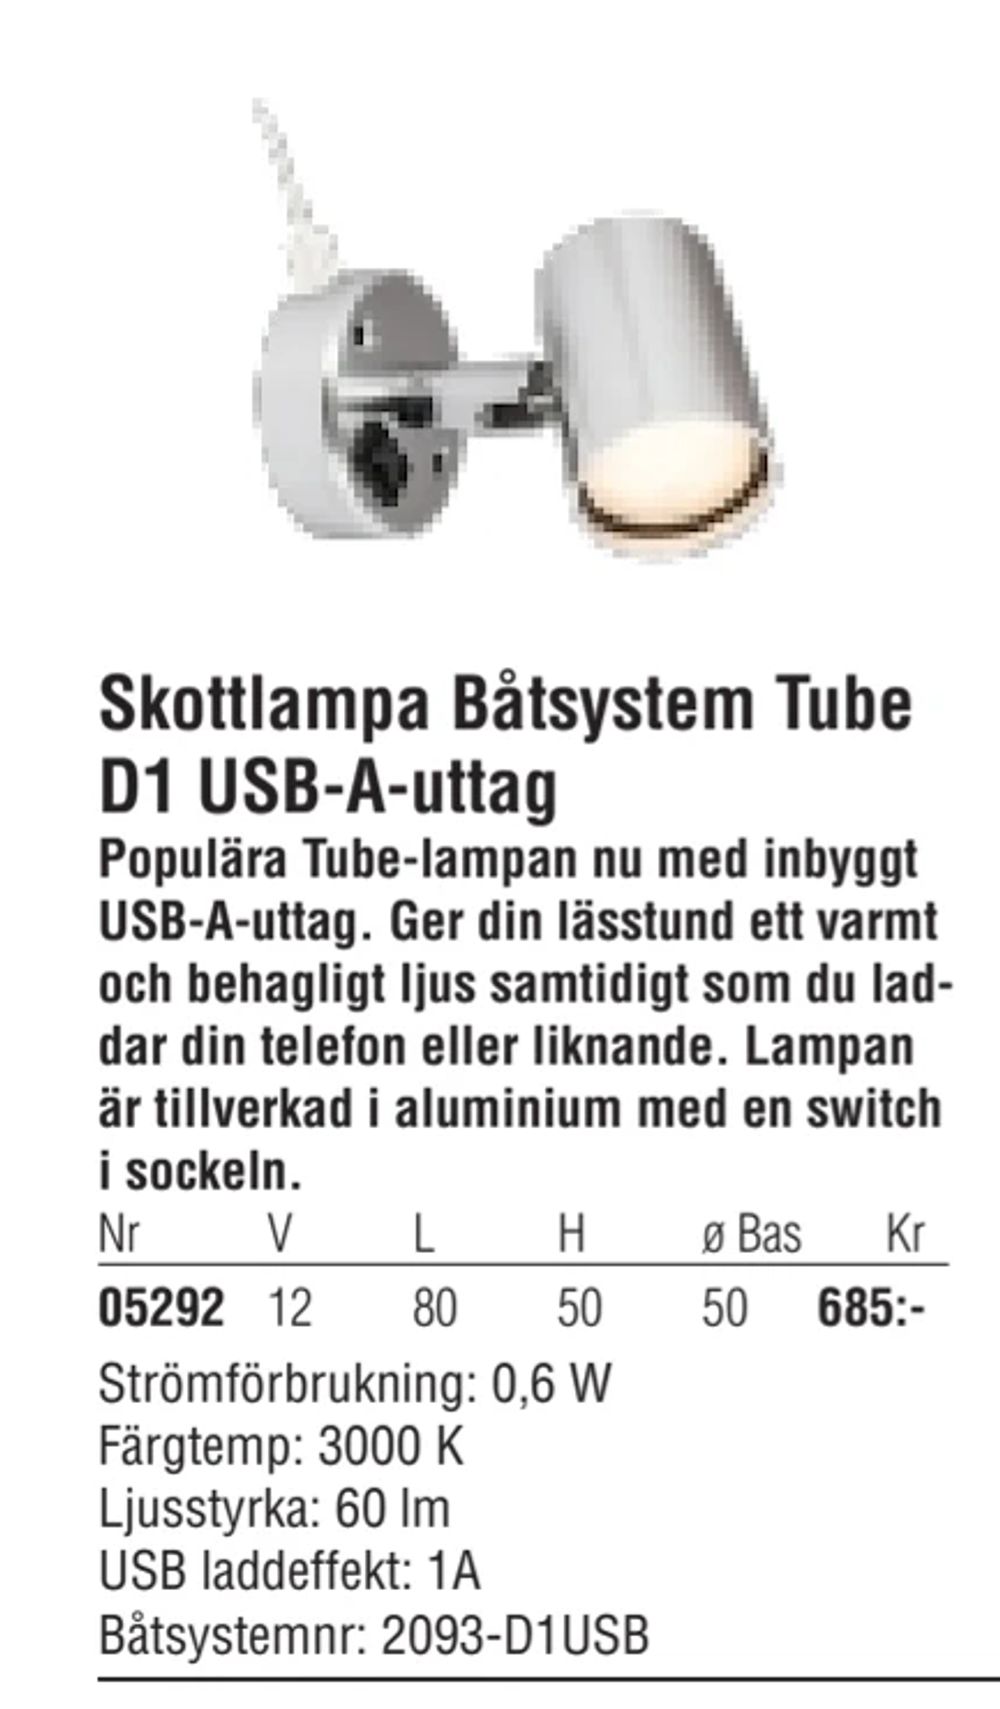 Erbjudanden på Skottlampa Båtsystem Tube D1 USB-A-uttag från Erlandsons Brygga för 685 kr